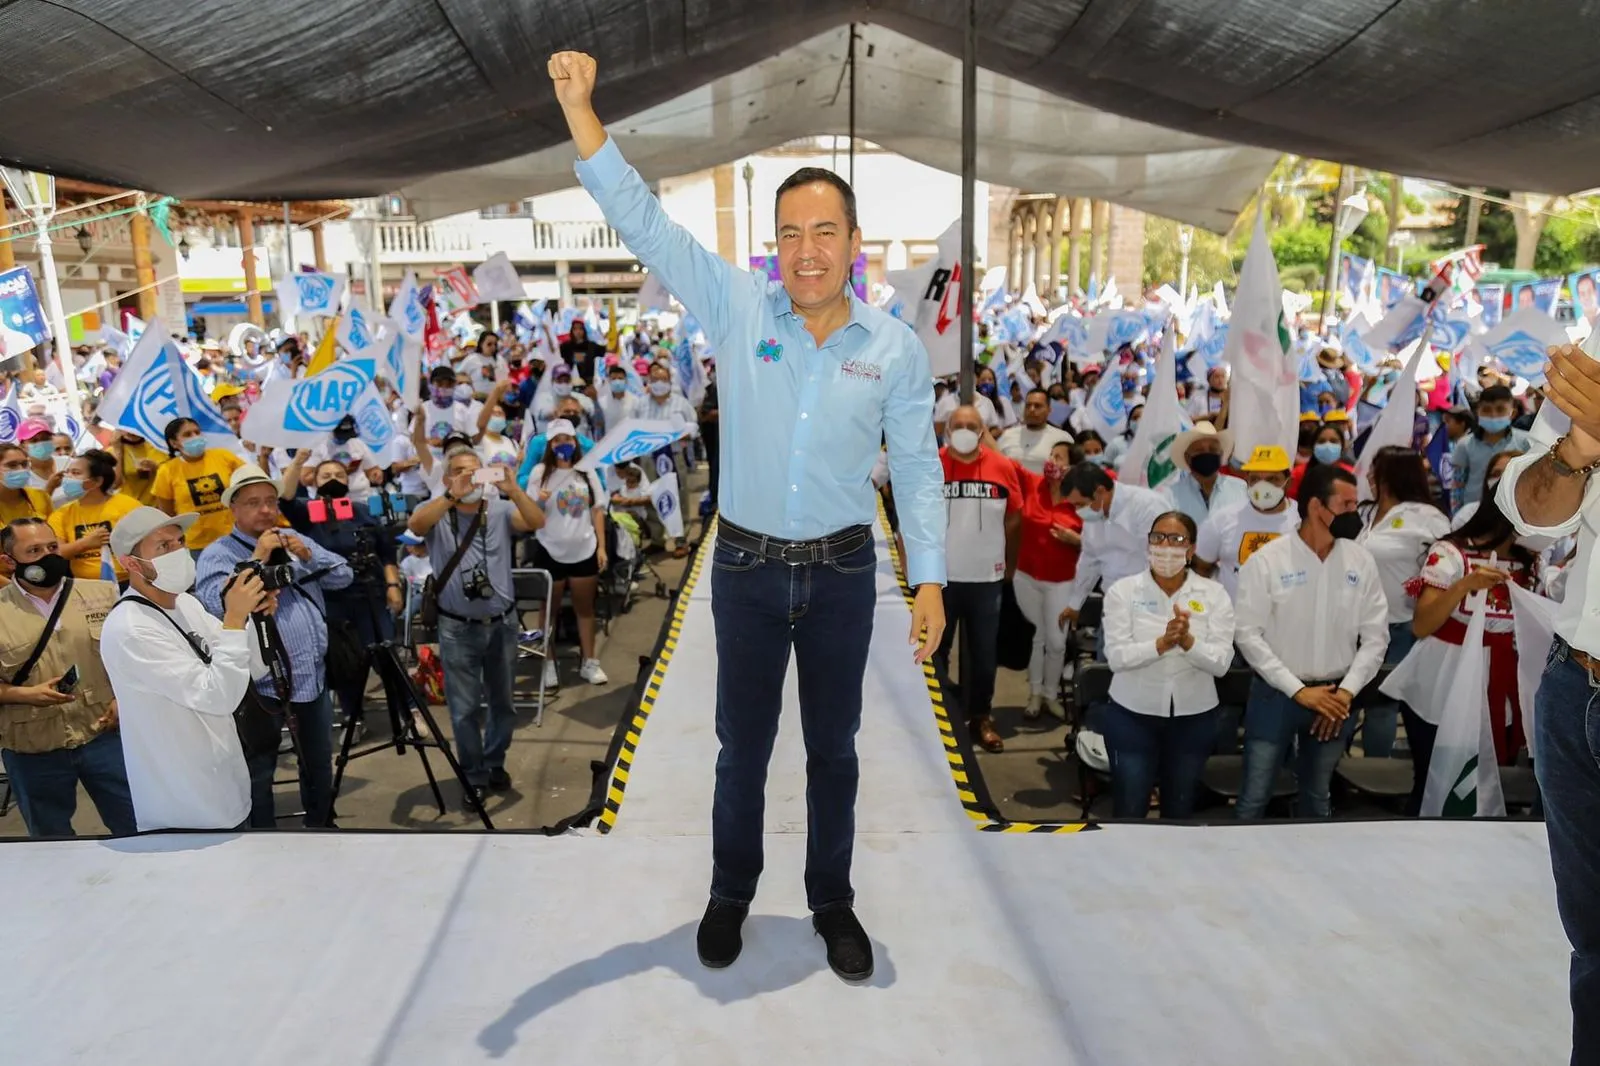 Traemos la racha ganadora, ya se cruzaron las encuestas y vamos a ganar, afirmo Carlos Herrera Tello durante su recorrido en Michoacán